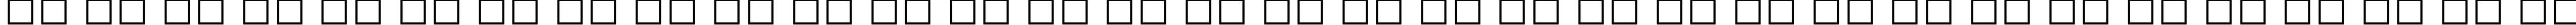 Пример написания русского алфавита шрифтом Gill Sans MT Condensed